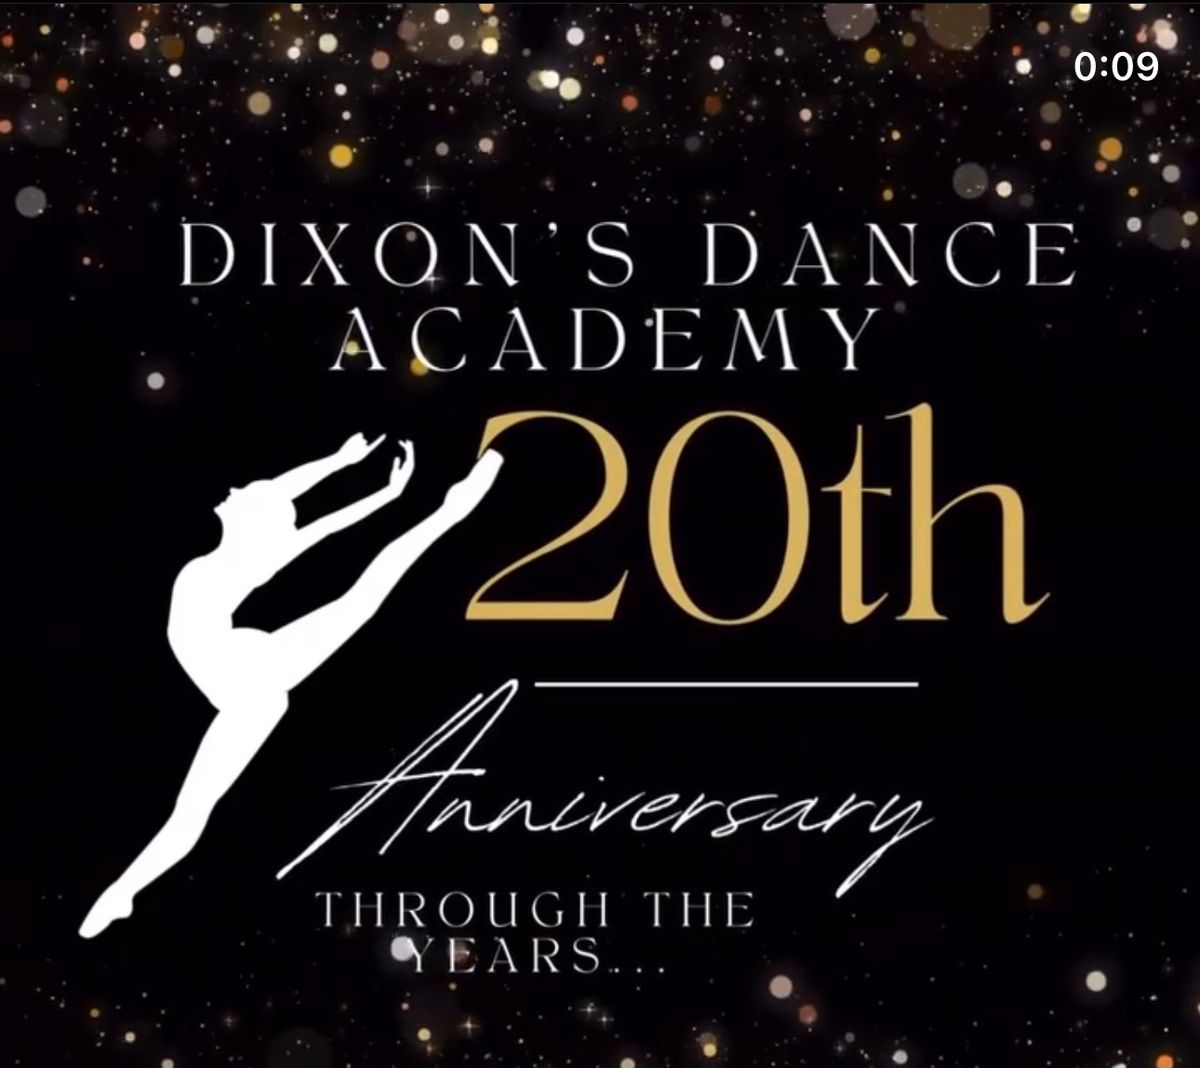 20th Anniversary Dinner Dance Celebration & Fundraiser 